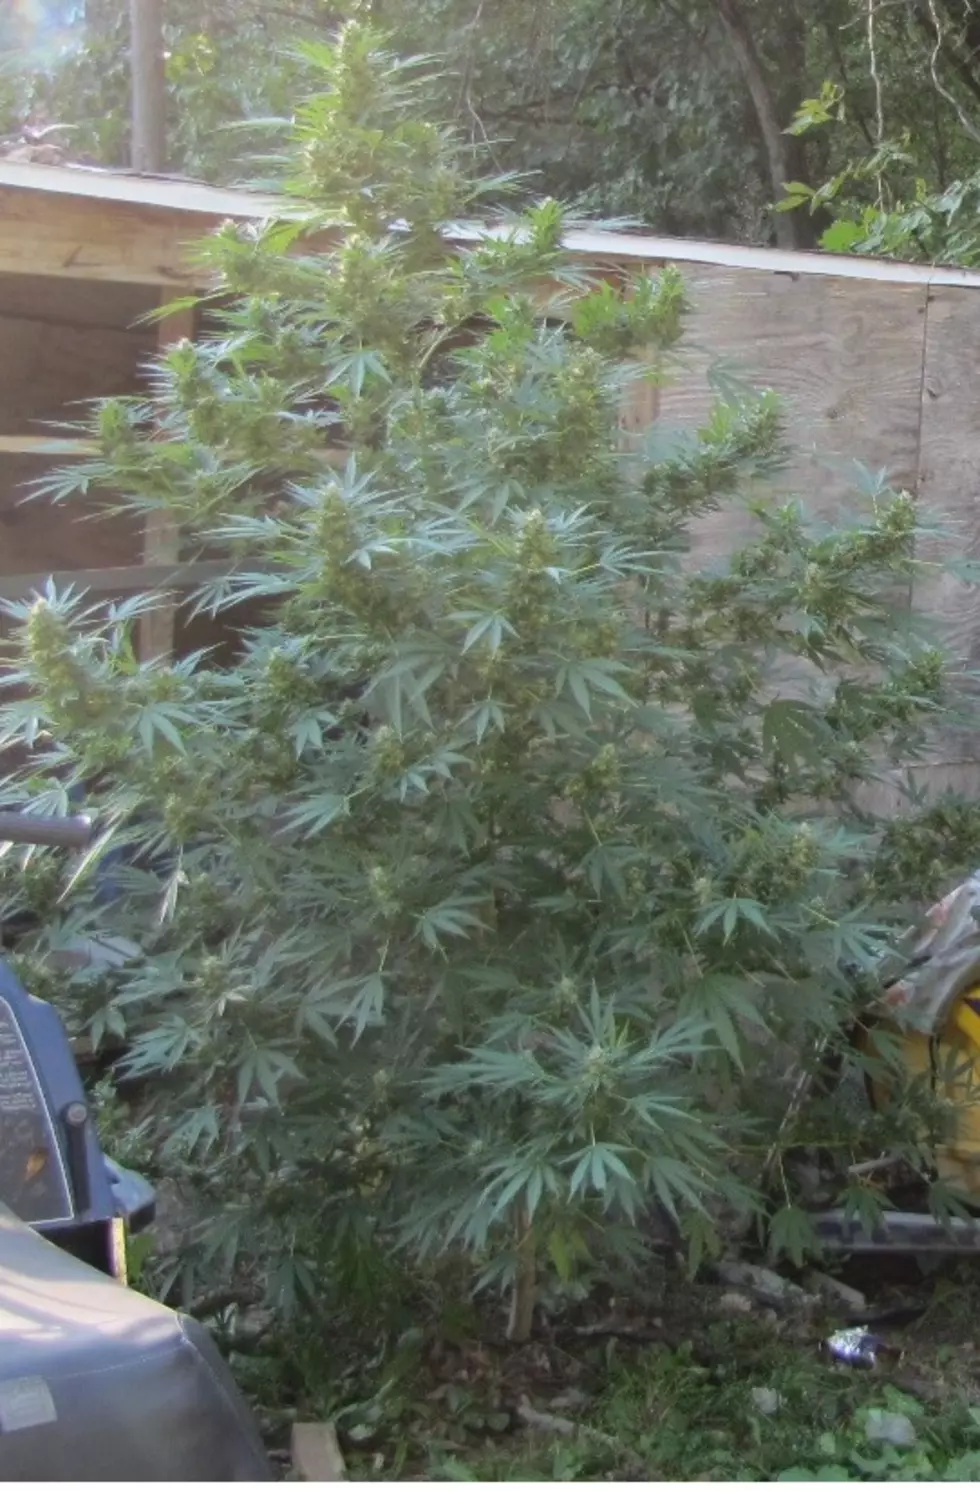 Oniontown Man Found With 14 Marijuana Plants, Police Say